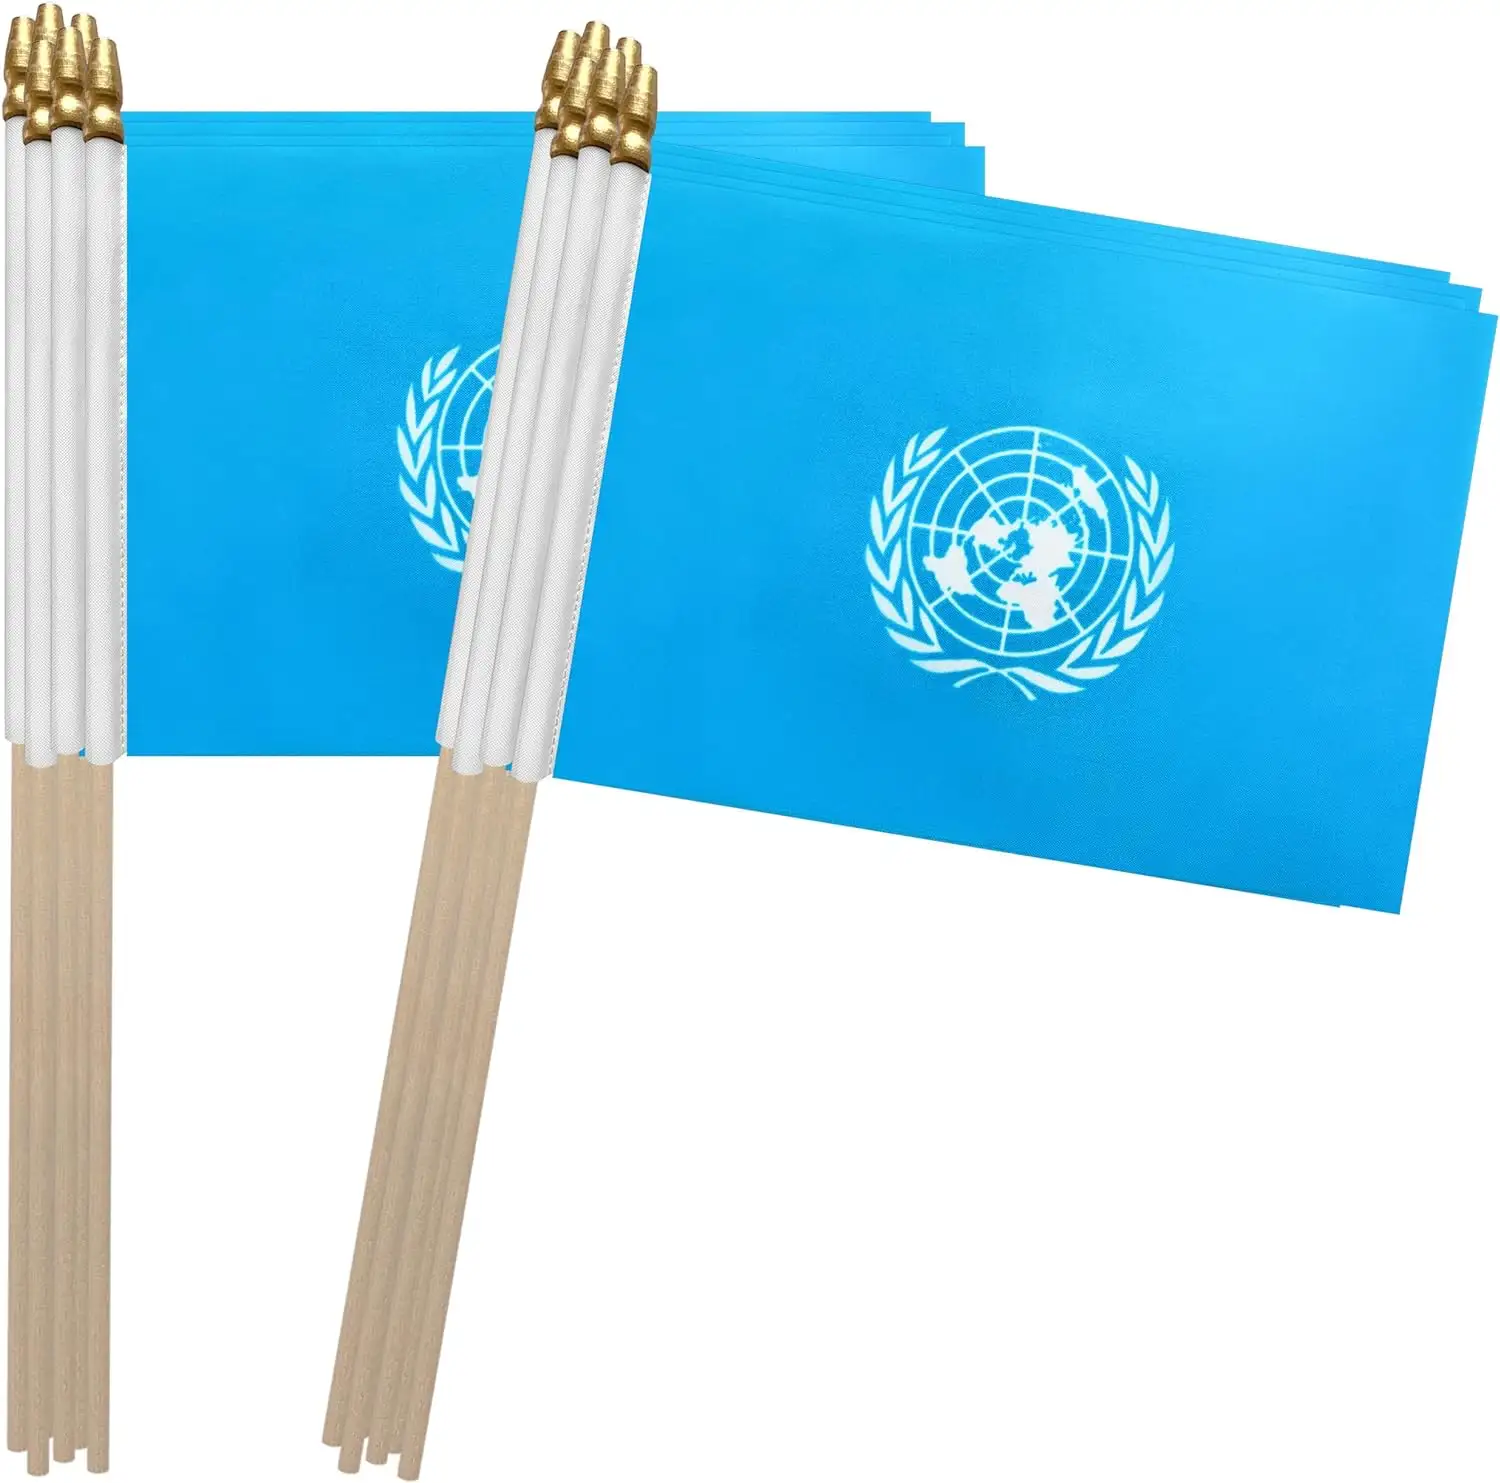 Yüksek kalite hazır gemi birleşmiş milletler sopa bayrak UN küçük Mini el bayrakları 4x6inches düzenlenen